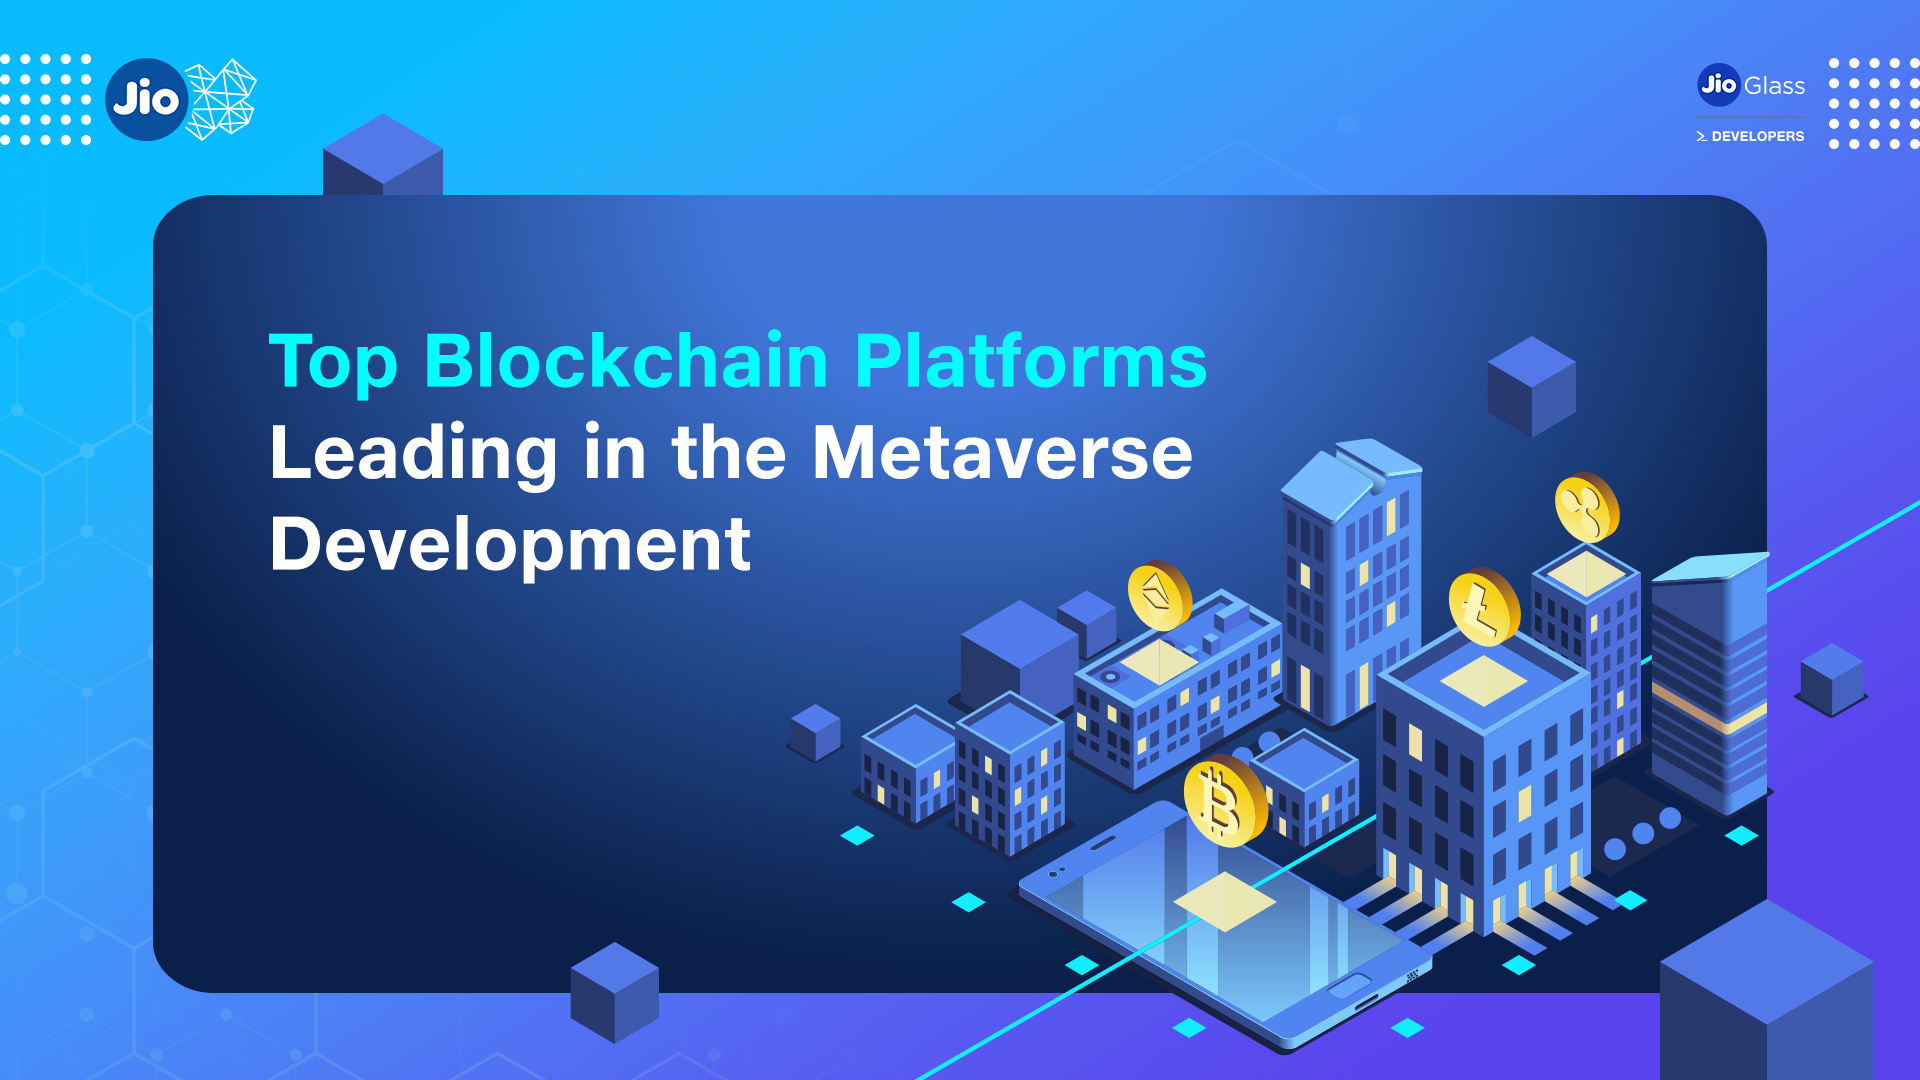 free blockchain development platform